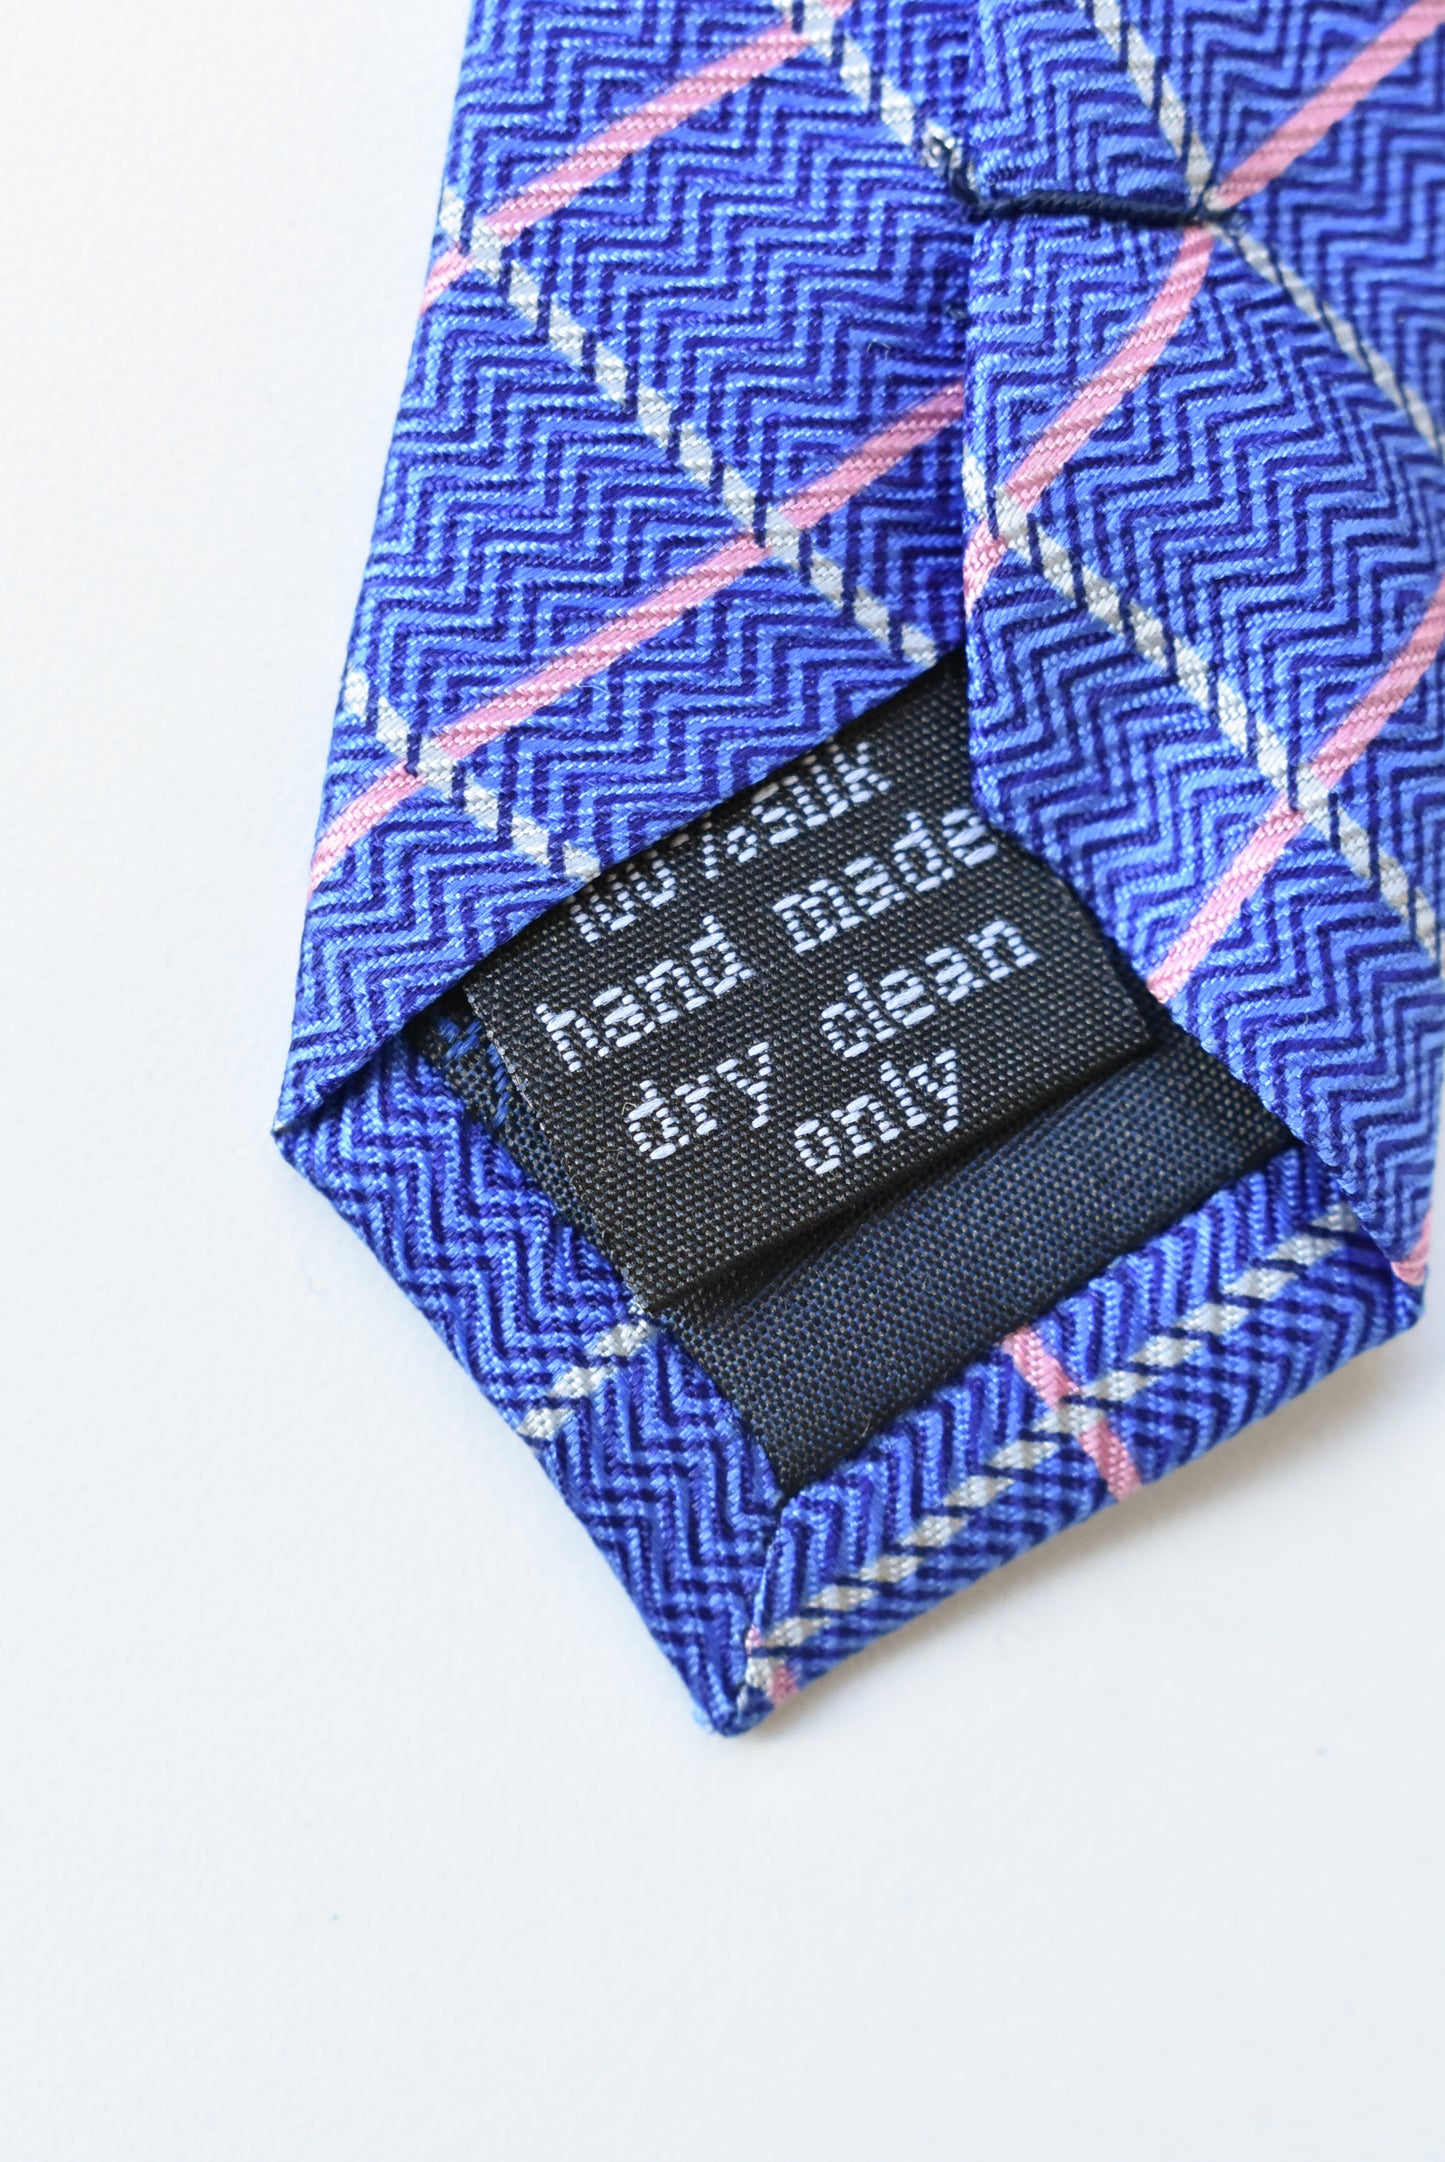 Bijoux Terner silk, blue tie